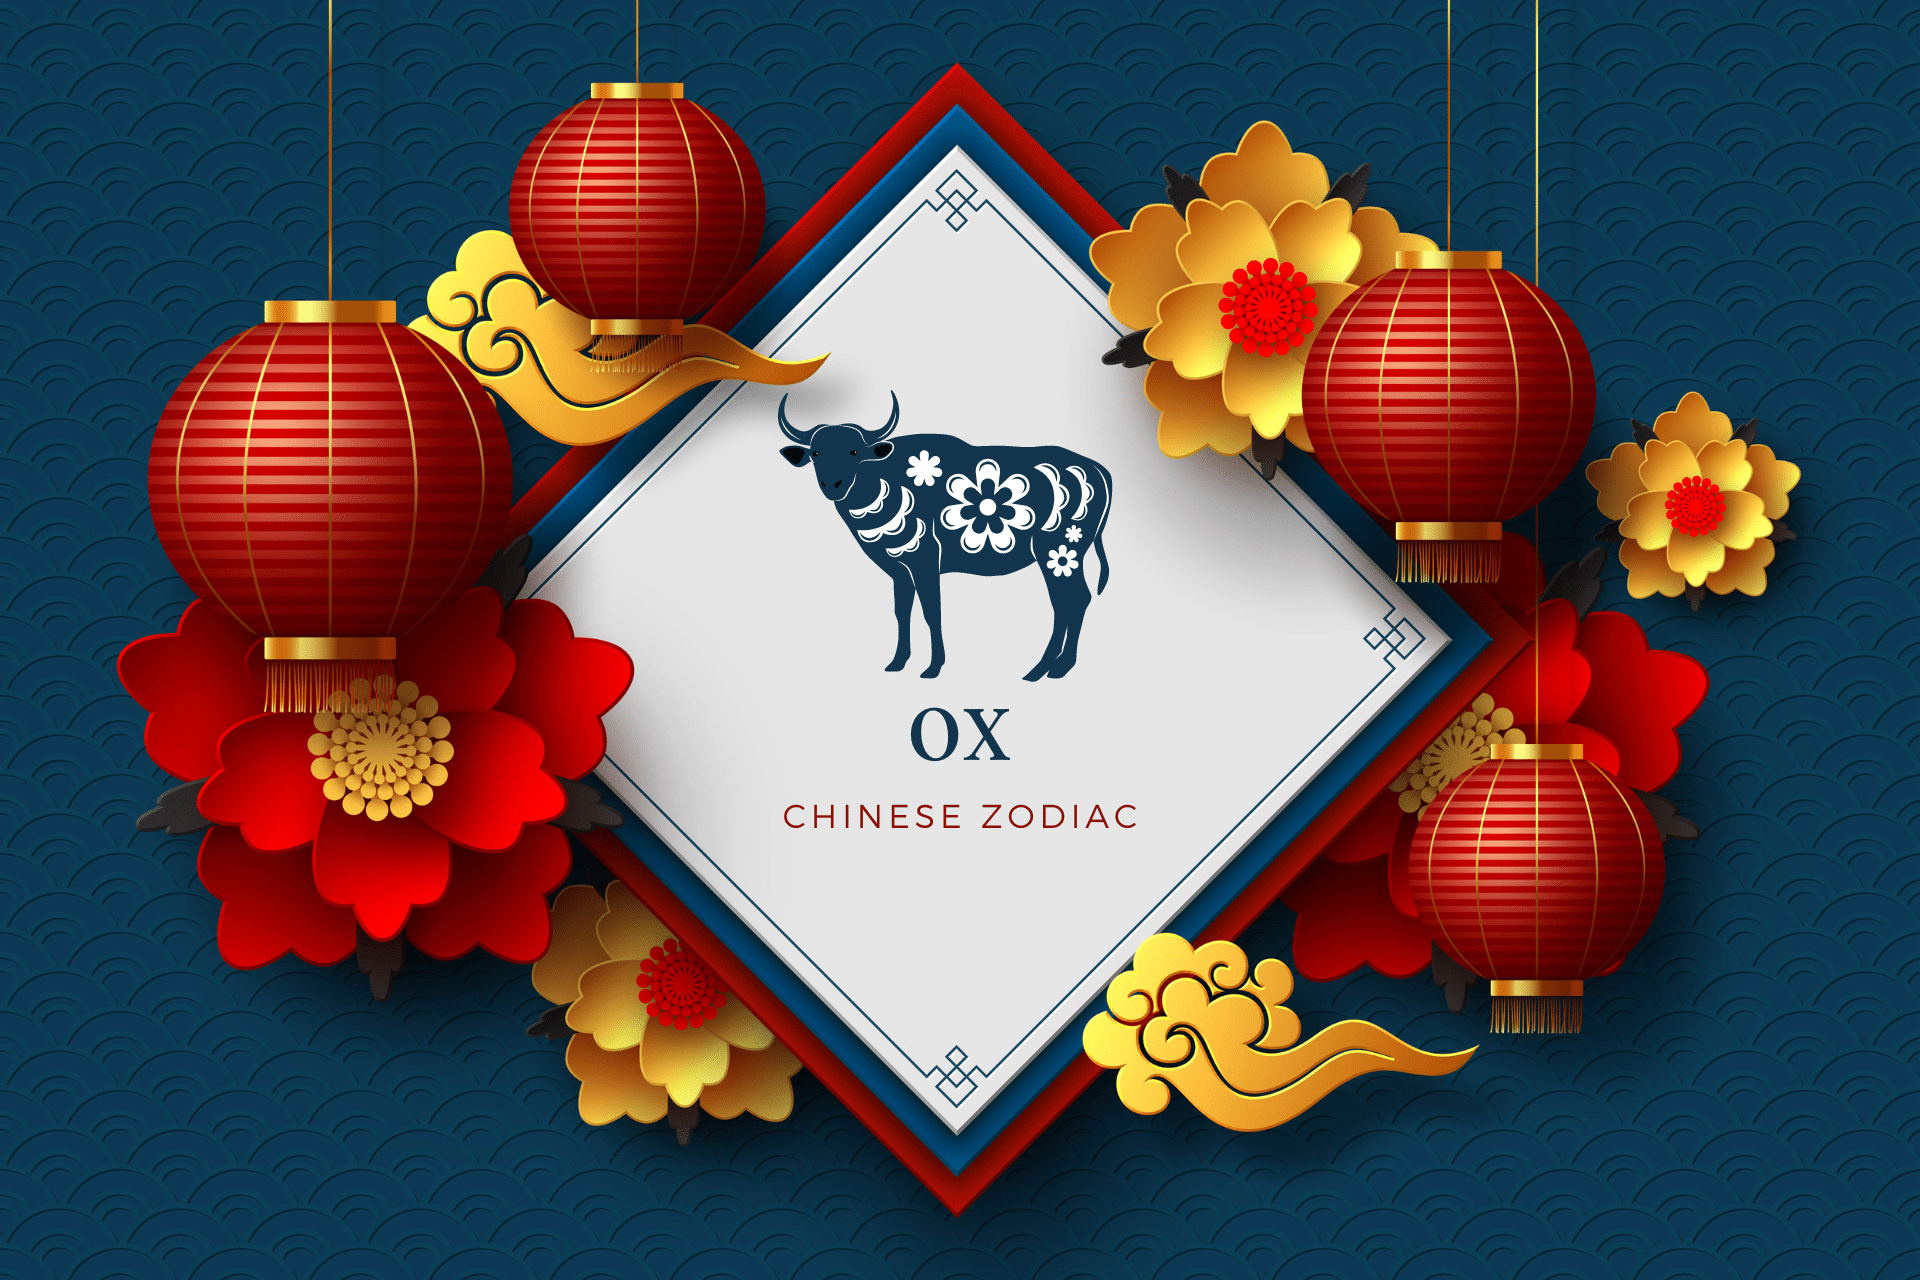 Ox Chinese Zodiac sign